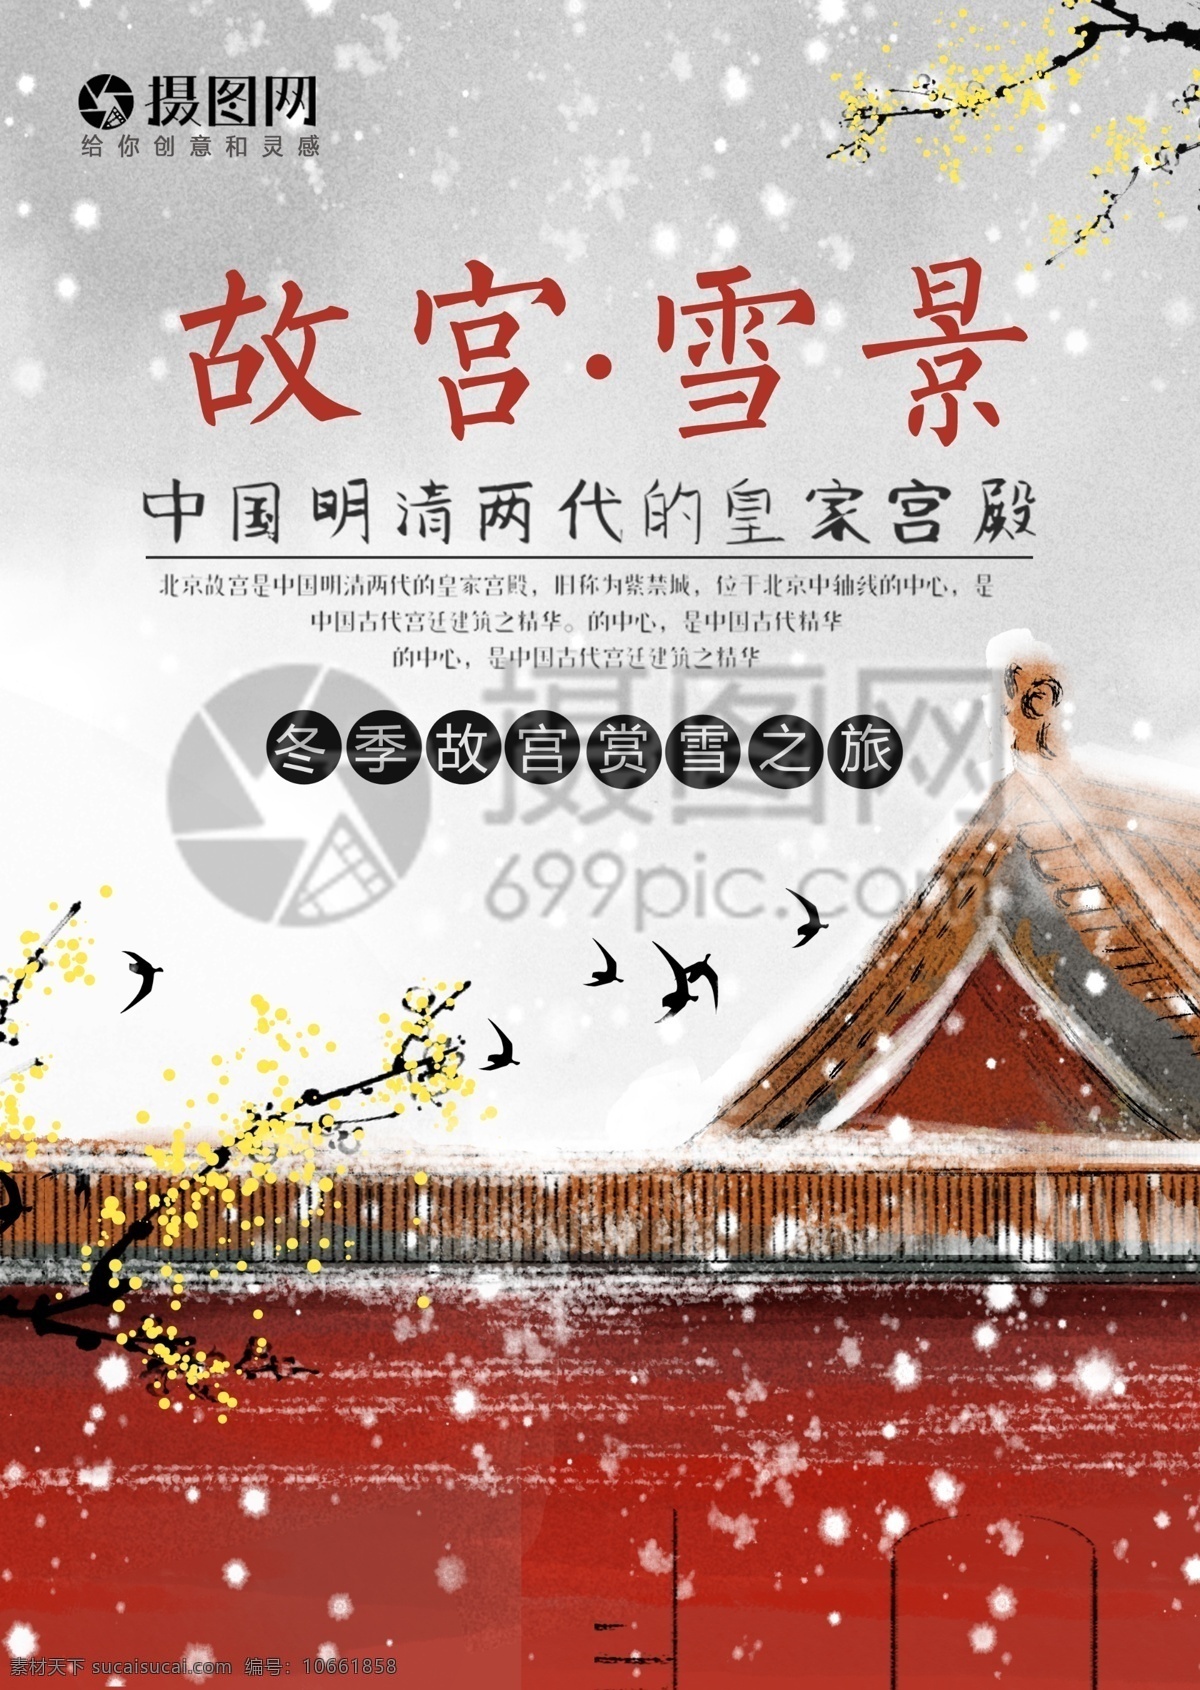 故宫 冬季 旅游 宣传单 首都 北京 冬天 下雪 雪景 古典 建筑 红色 白色 插画 手绘 浪漫 度假 旅游宣传 宣传单设计 假期 游玩 传单